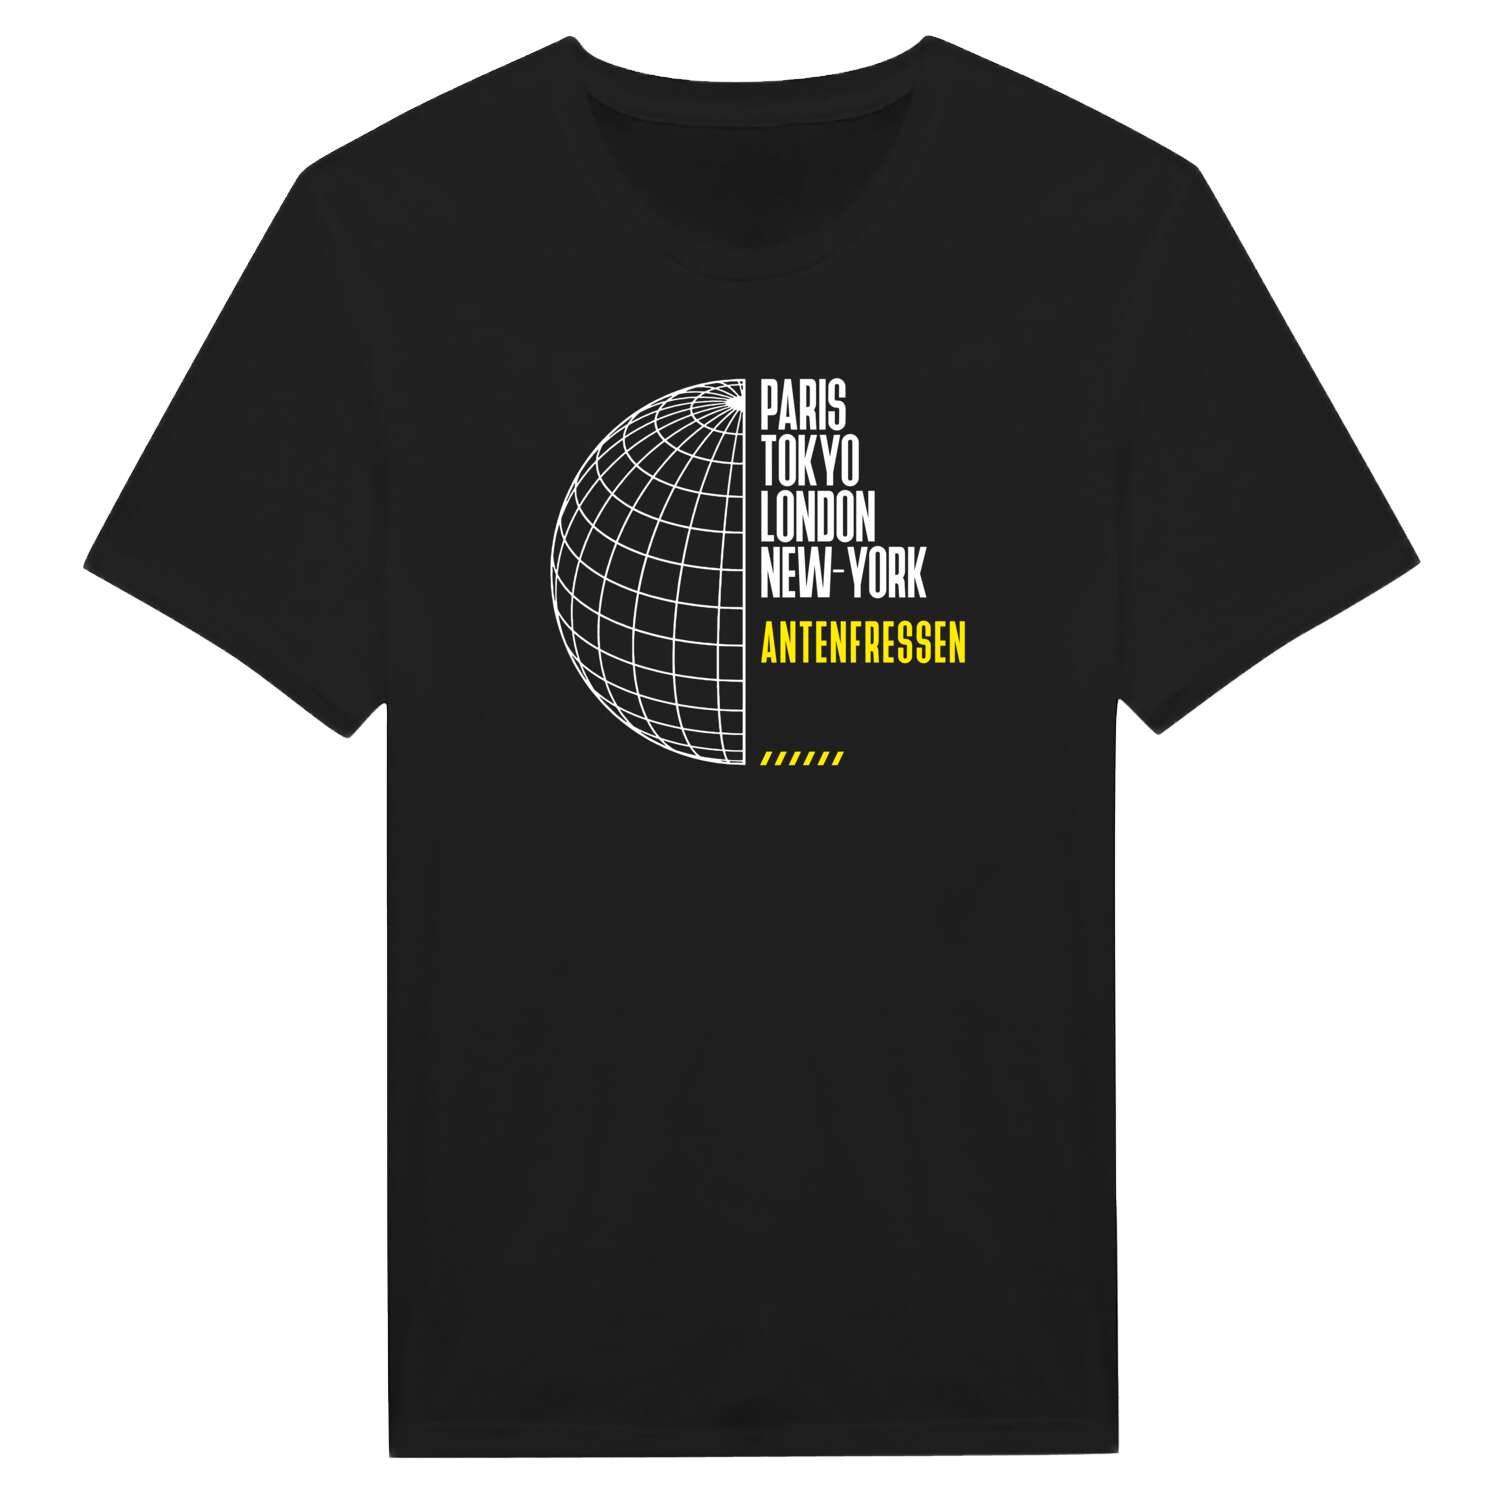 Antenfressen T-Shirt »Paris Tokyo London«